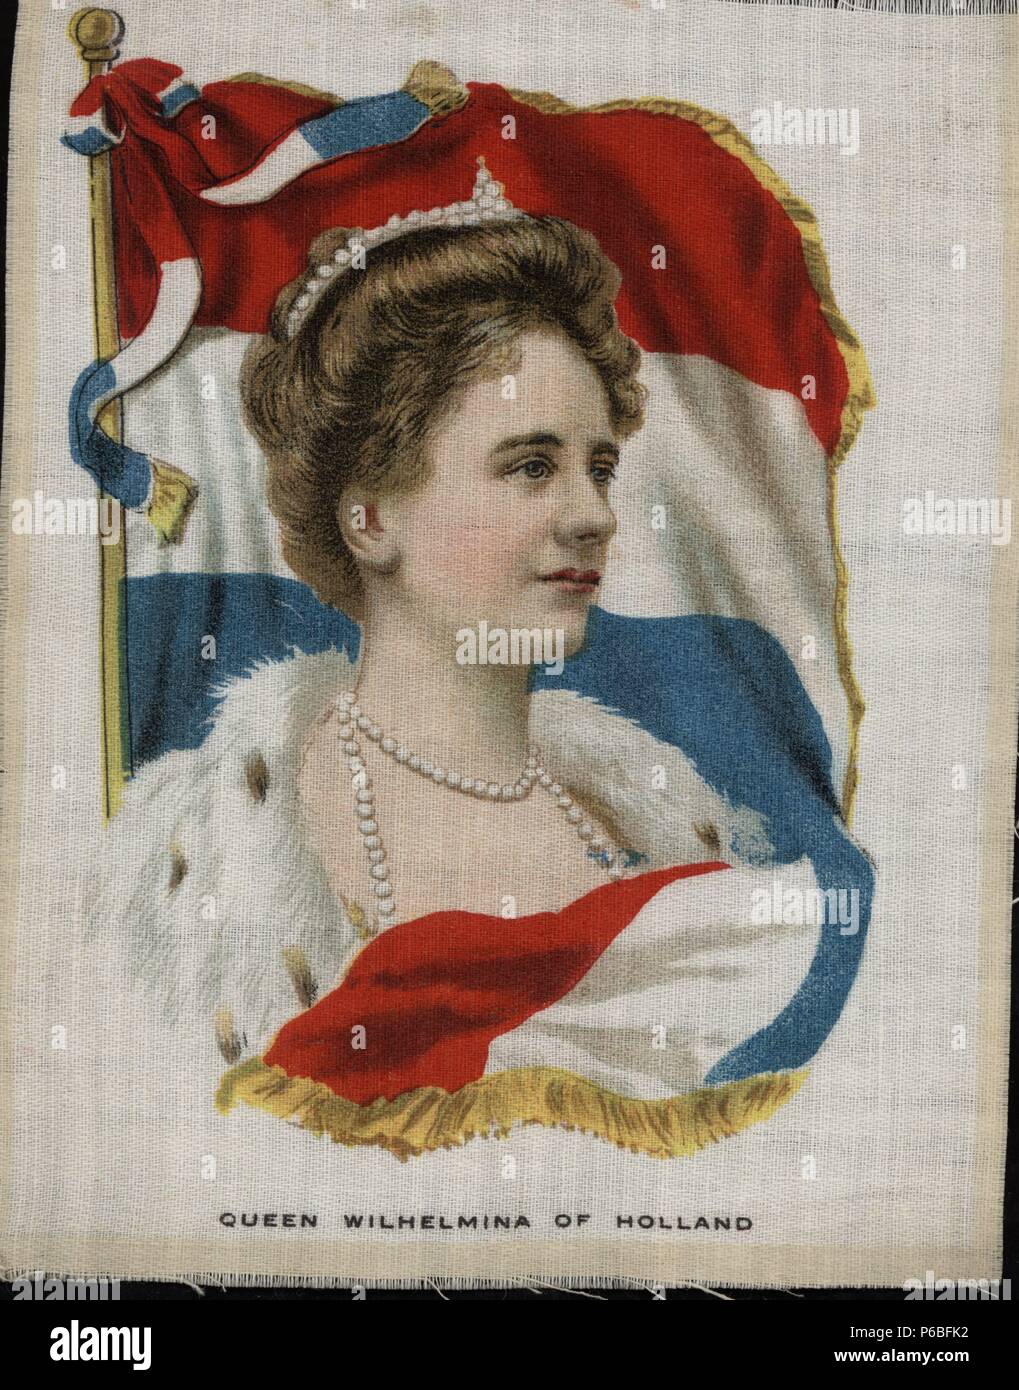 Guillermina de los Países Bajos (1880-1962), reina de Holanda. Retrato y bandera impresos sobre tela. Años 1920. Stock Photo